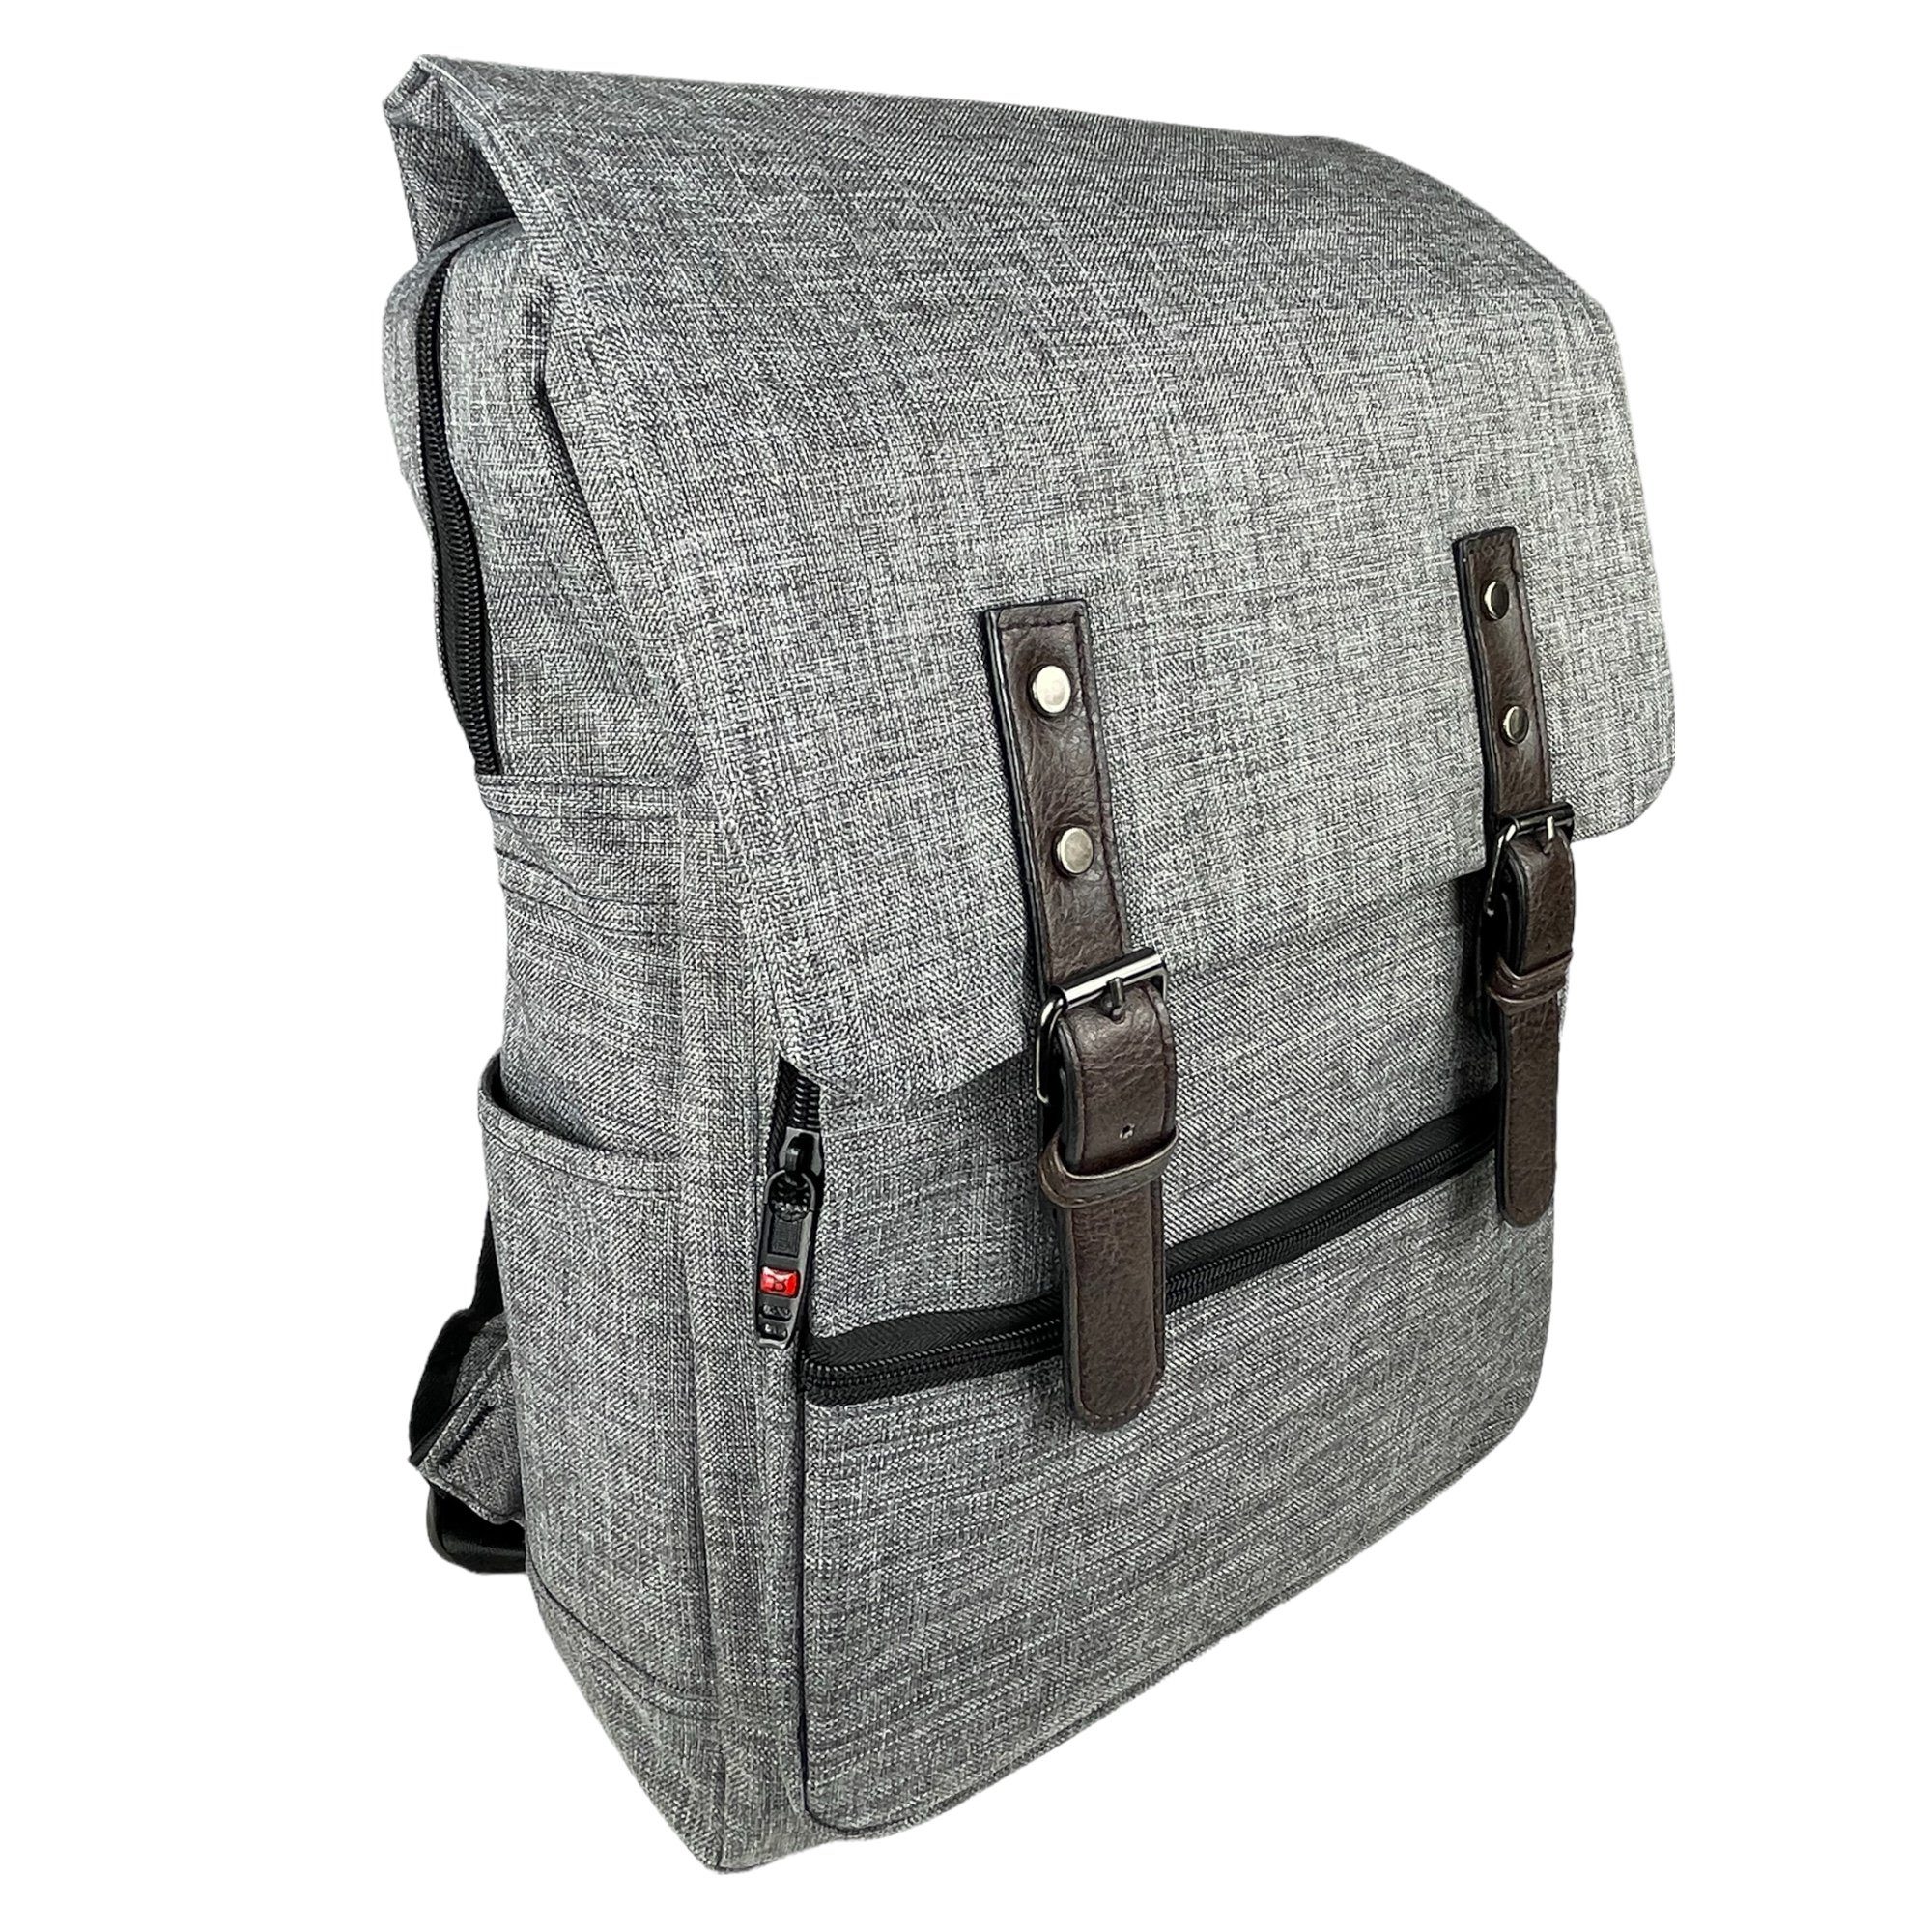 Taschen4life Laptoprucksack Rucksack aus Stoff - Schulrucksack D9010, mit Laptopfach, strapazierfähig uind gut gepolstert, ideal für Schule